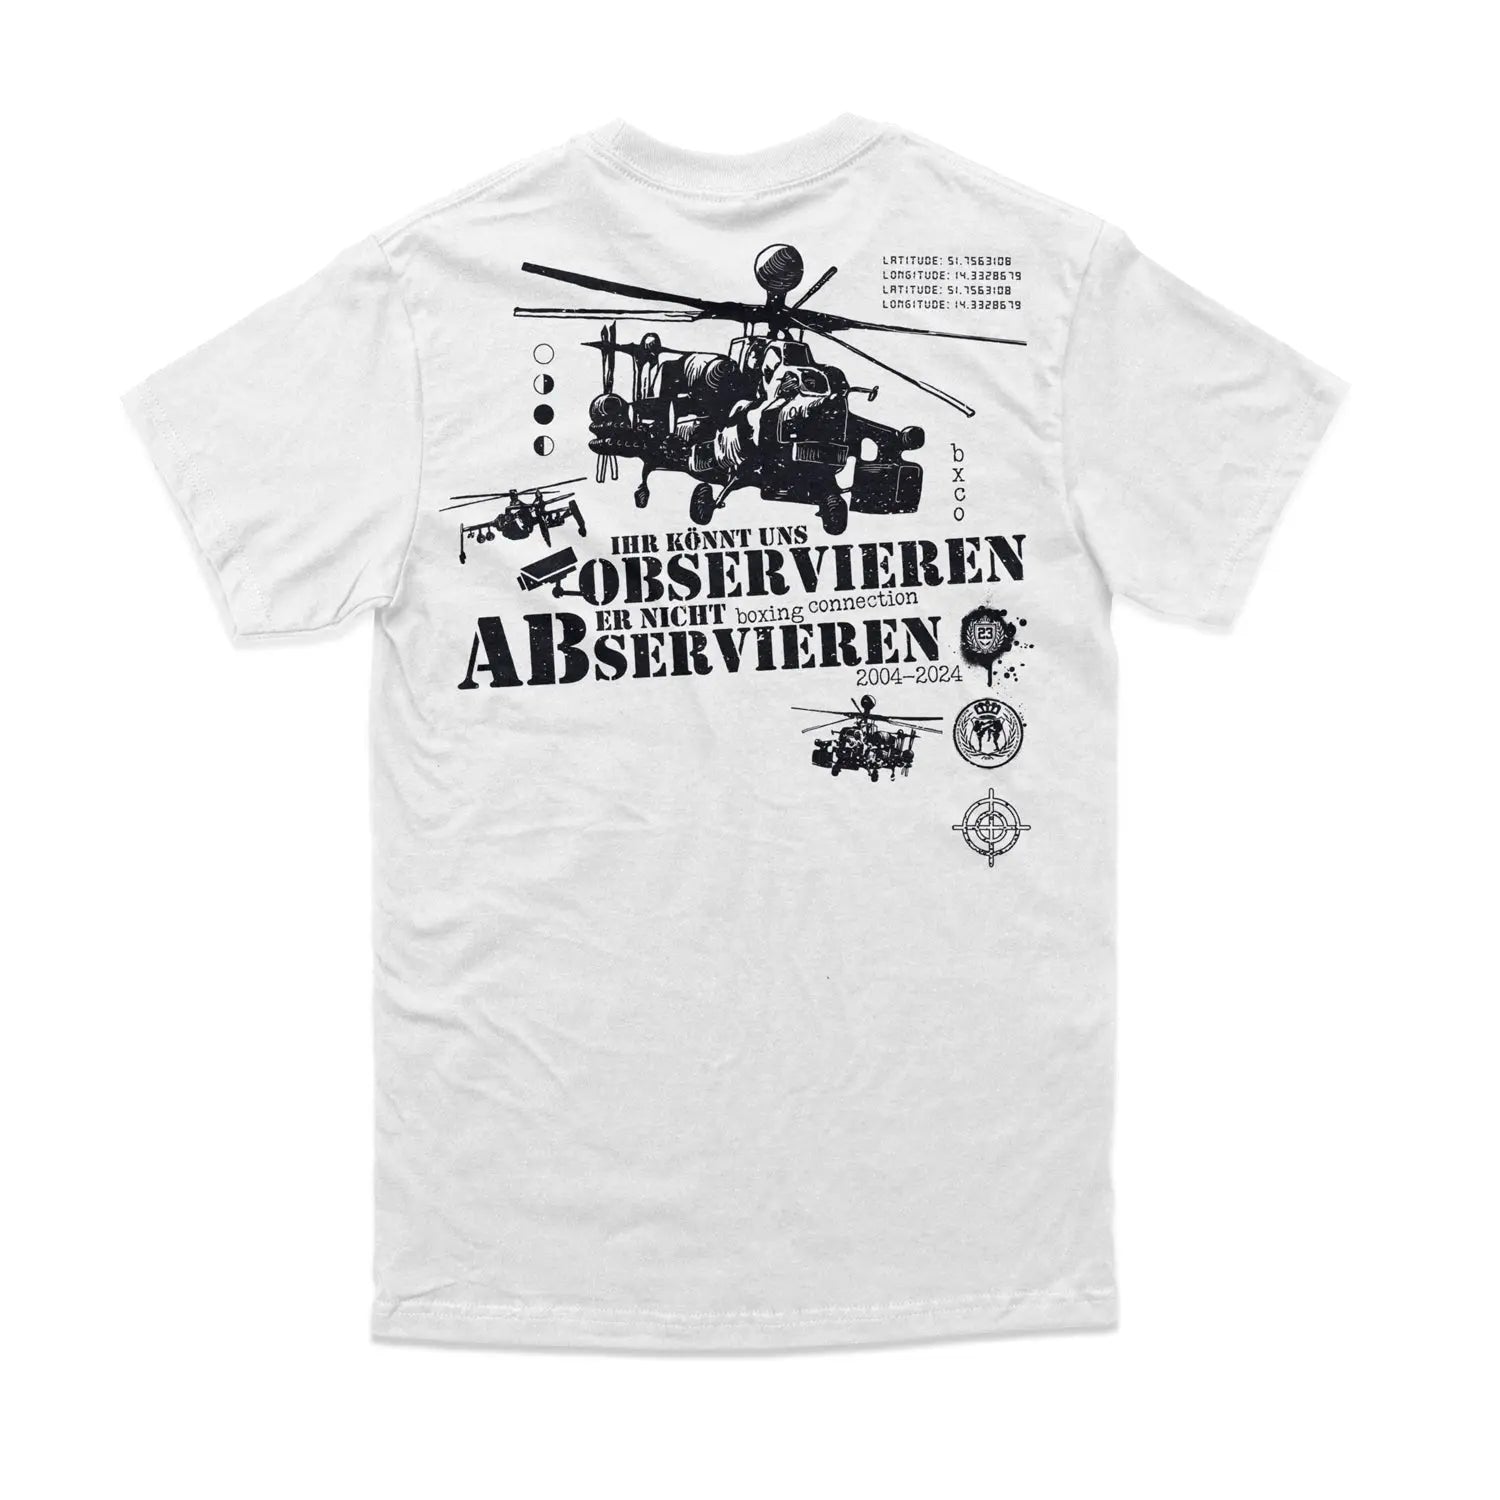 Label 23 T-Shirt Abservieren white